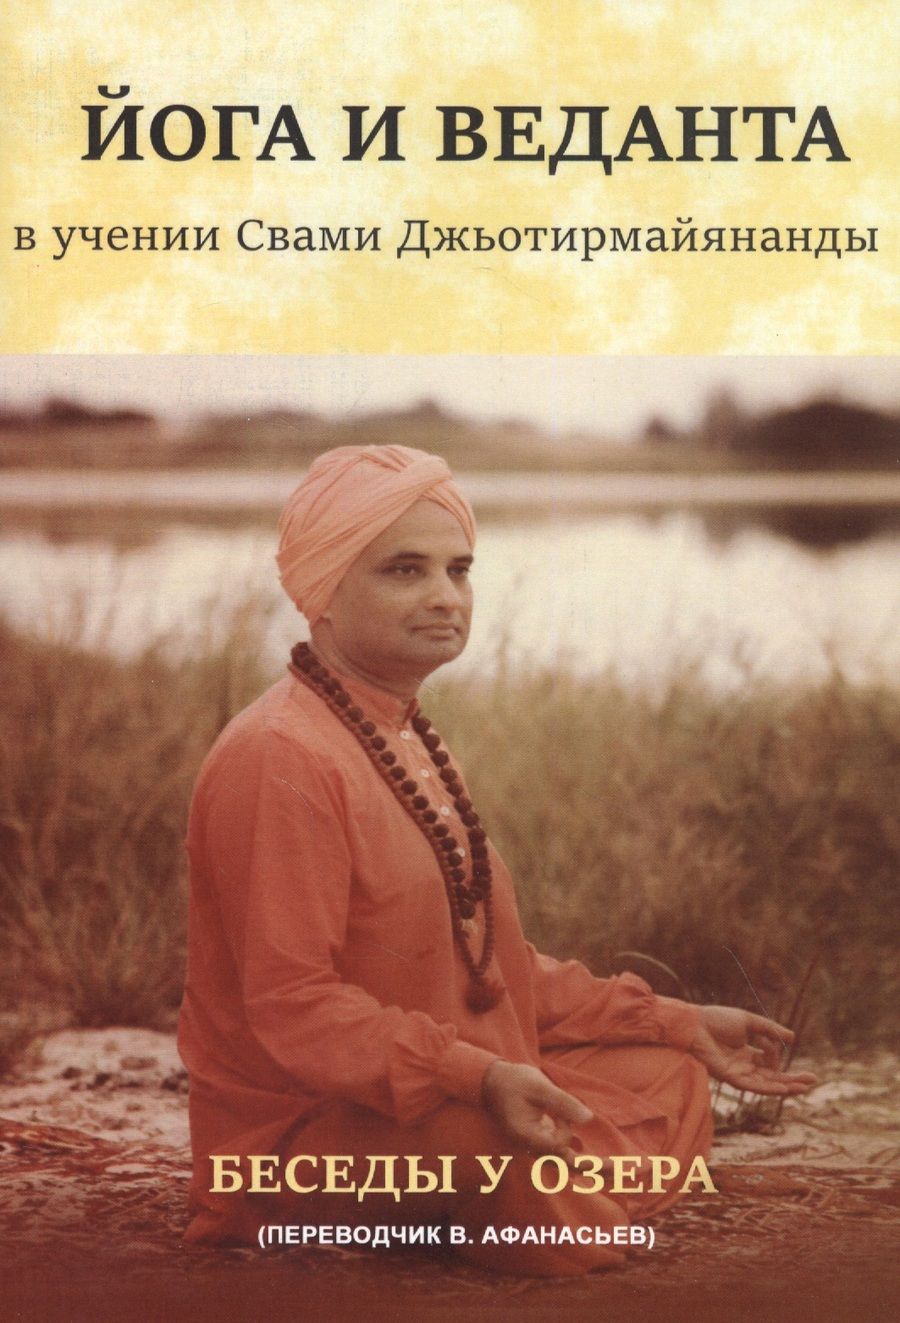 Обложка книги "Джьотирмайянанда Свами: Йога и веданта в учении Свами Джьотирмайянанды. Беседы у озера"